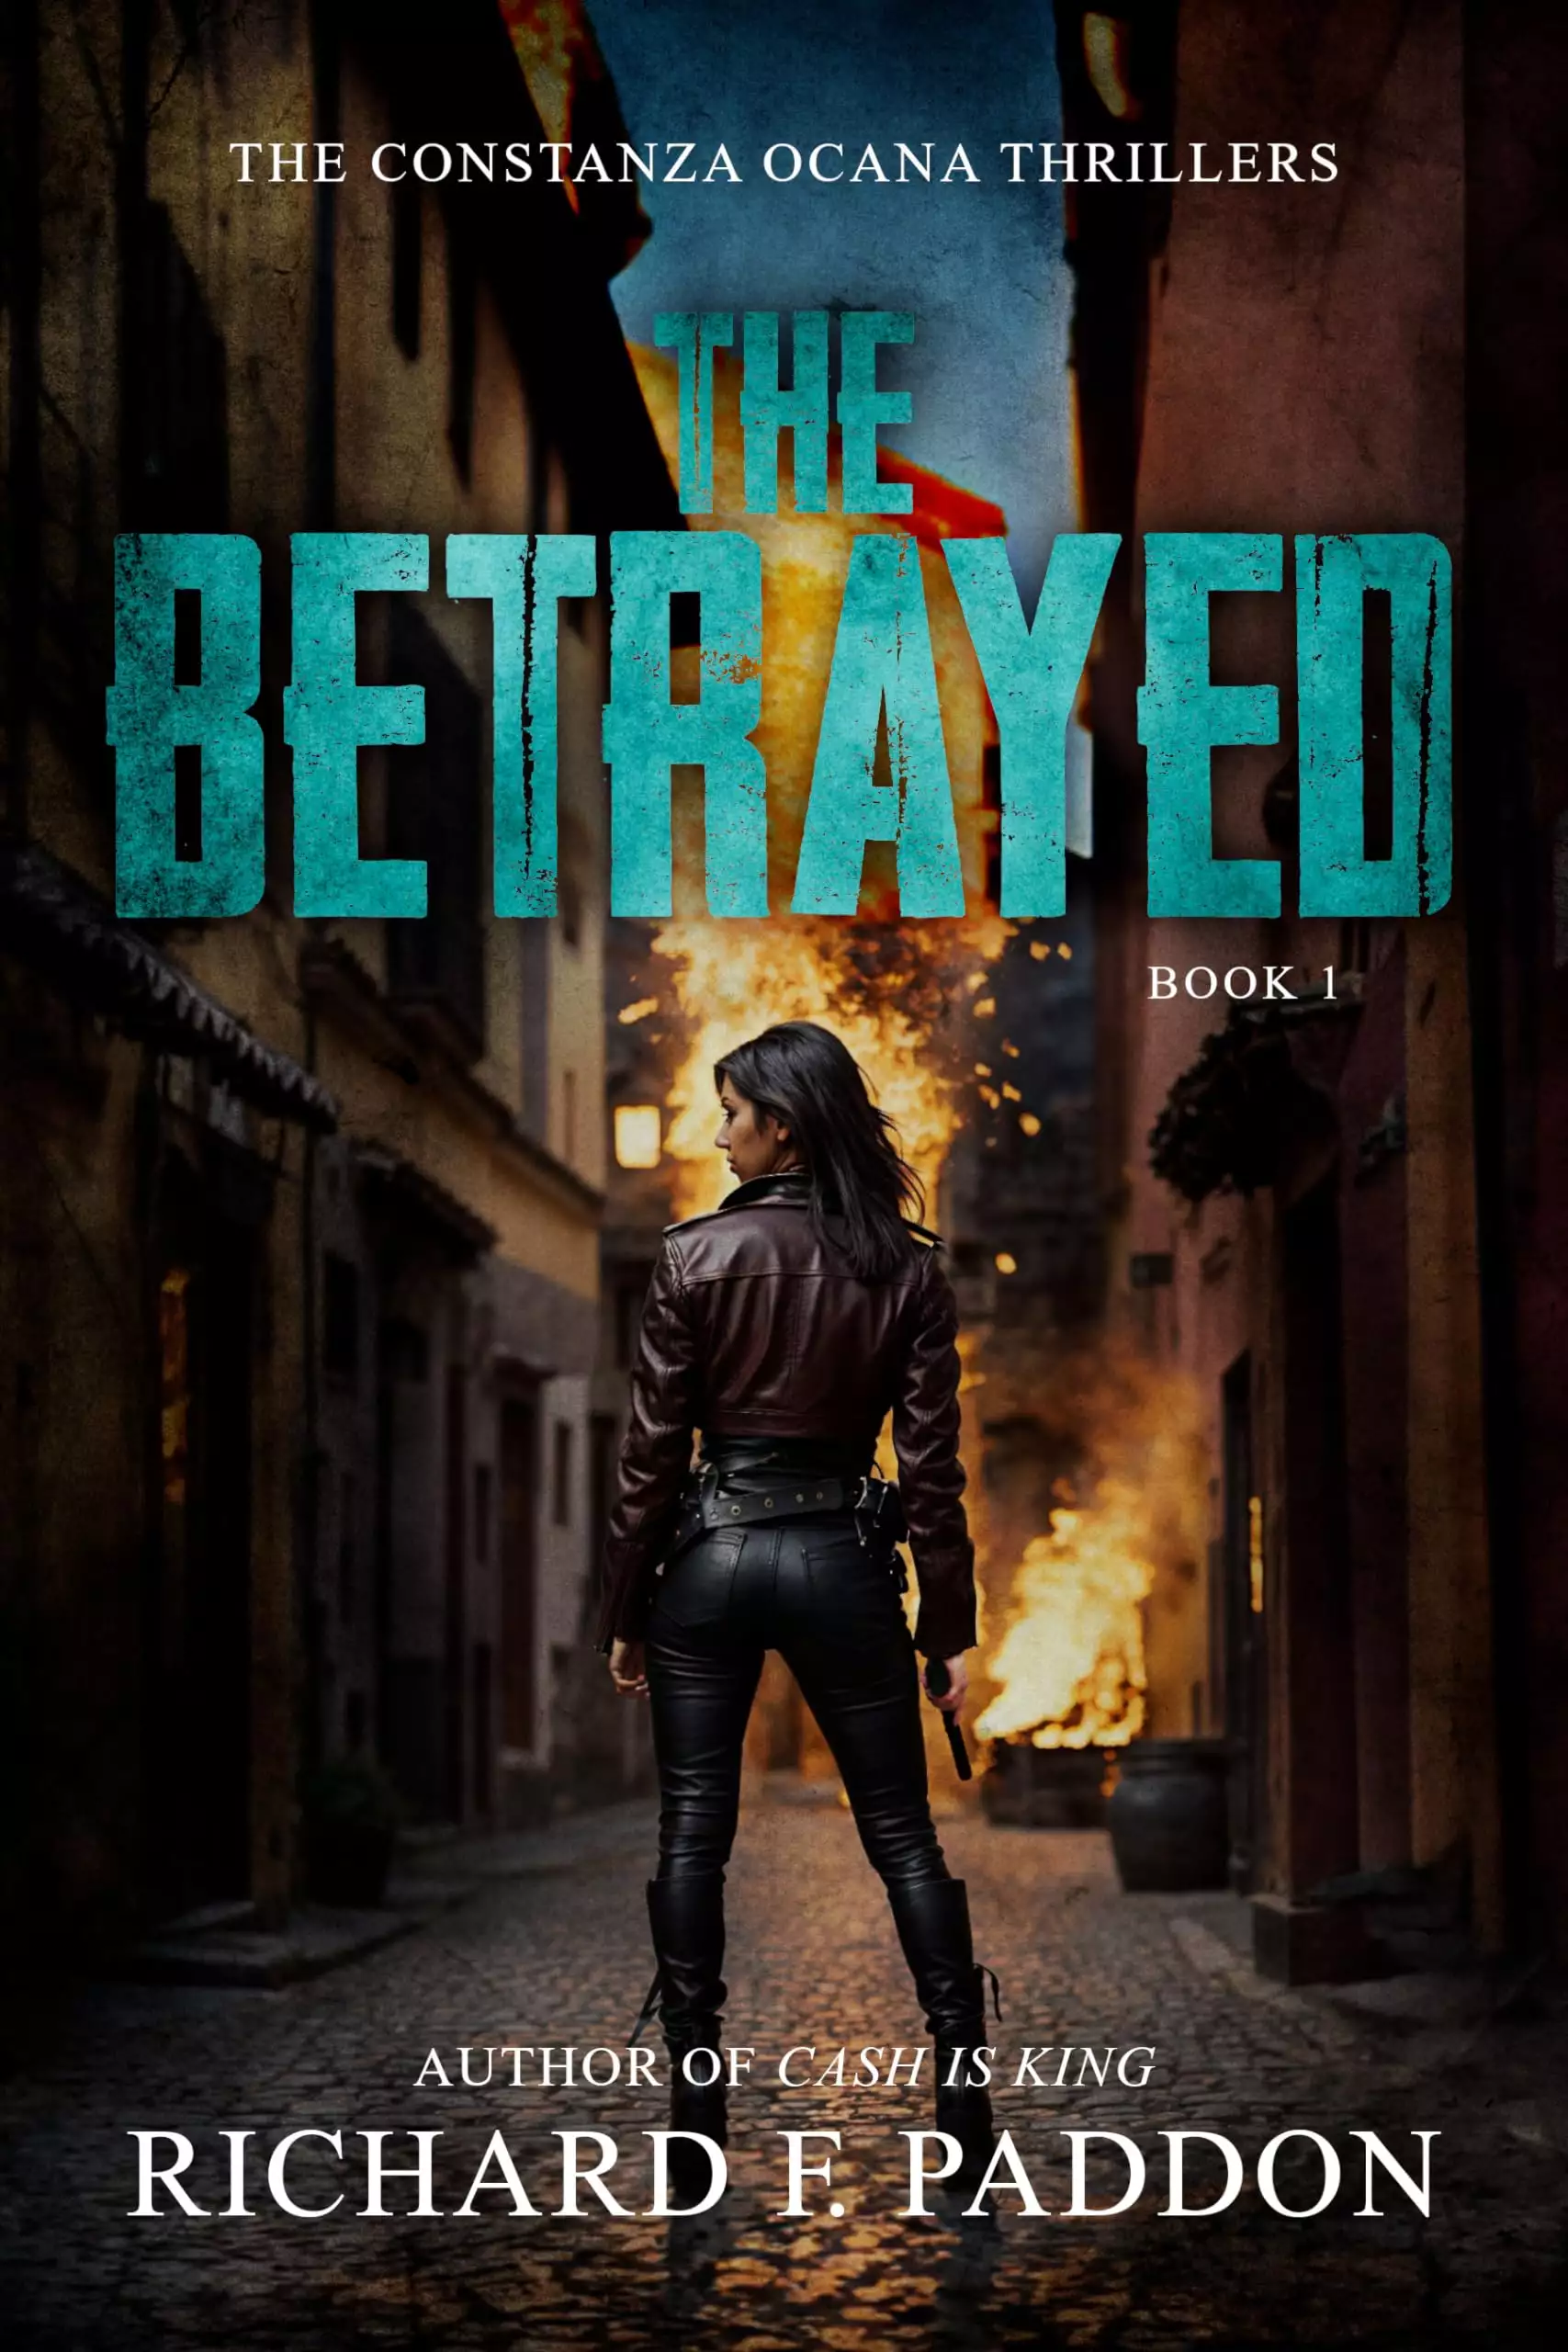 The Betrayed: An Assassin Thriller